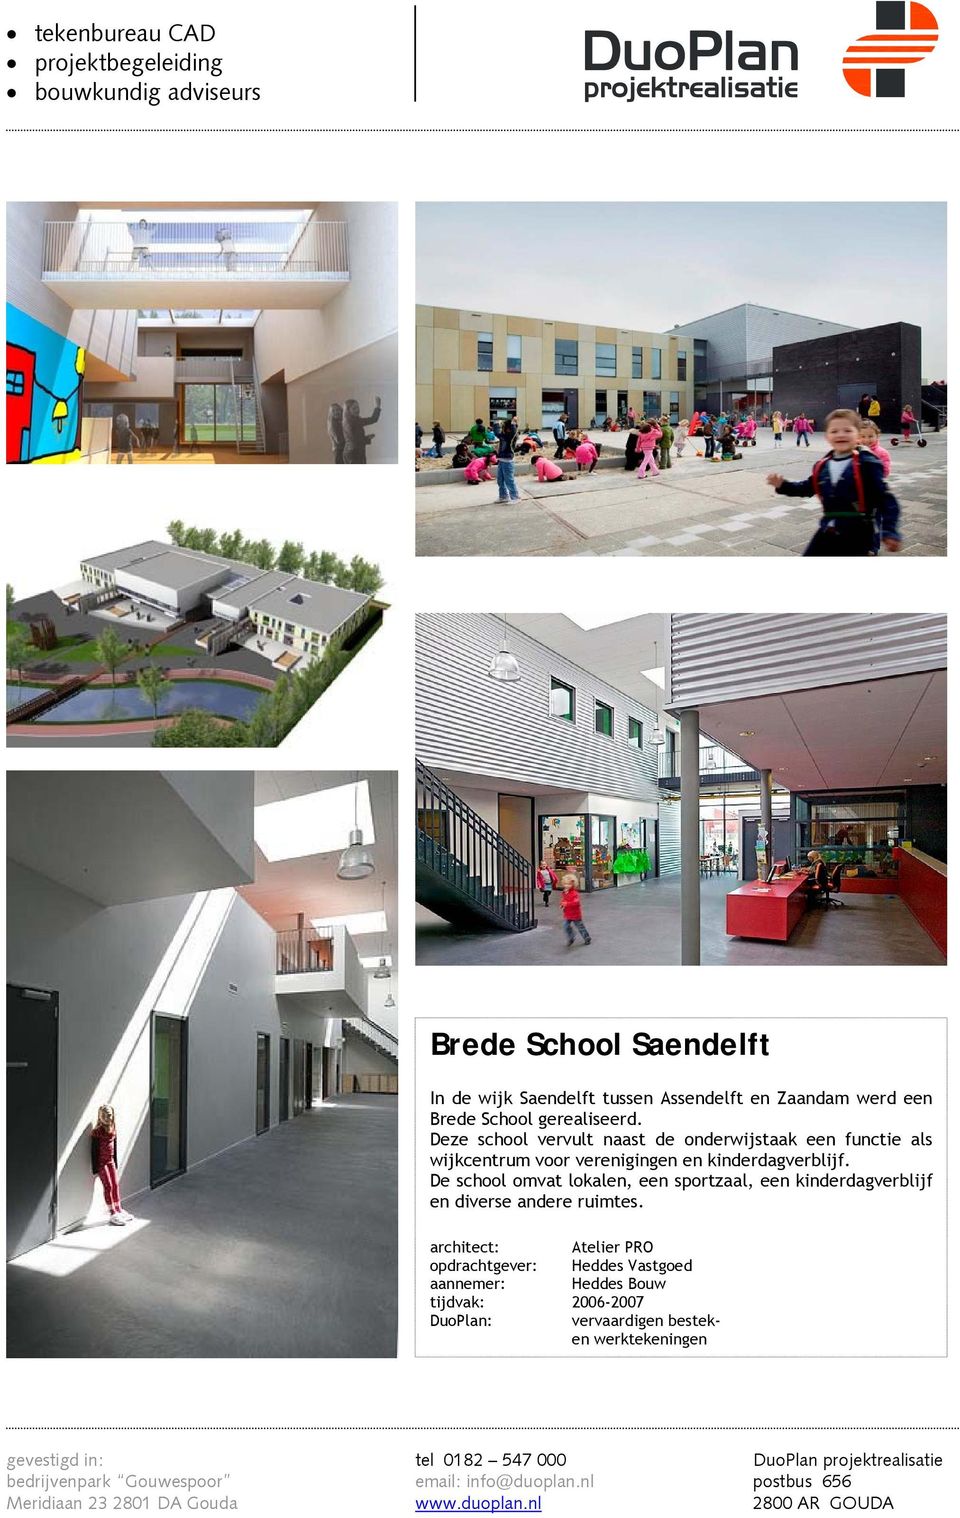 De school omvat lokalen, een sportzaal, een kinderdagverblijf en diverse andere ruimtes.